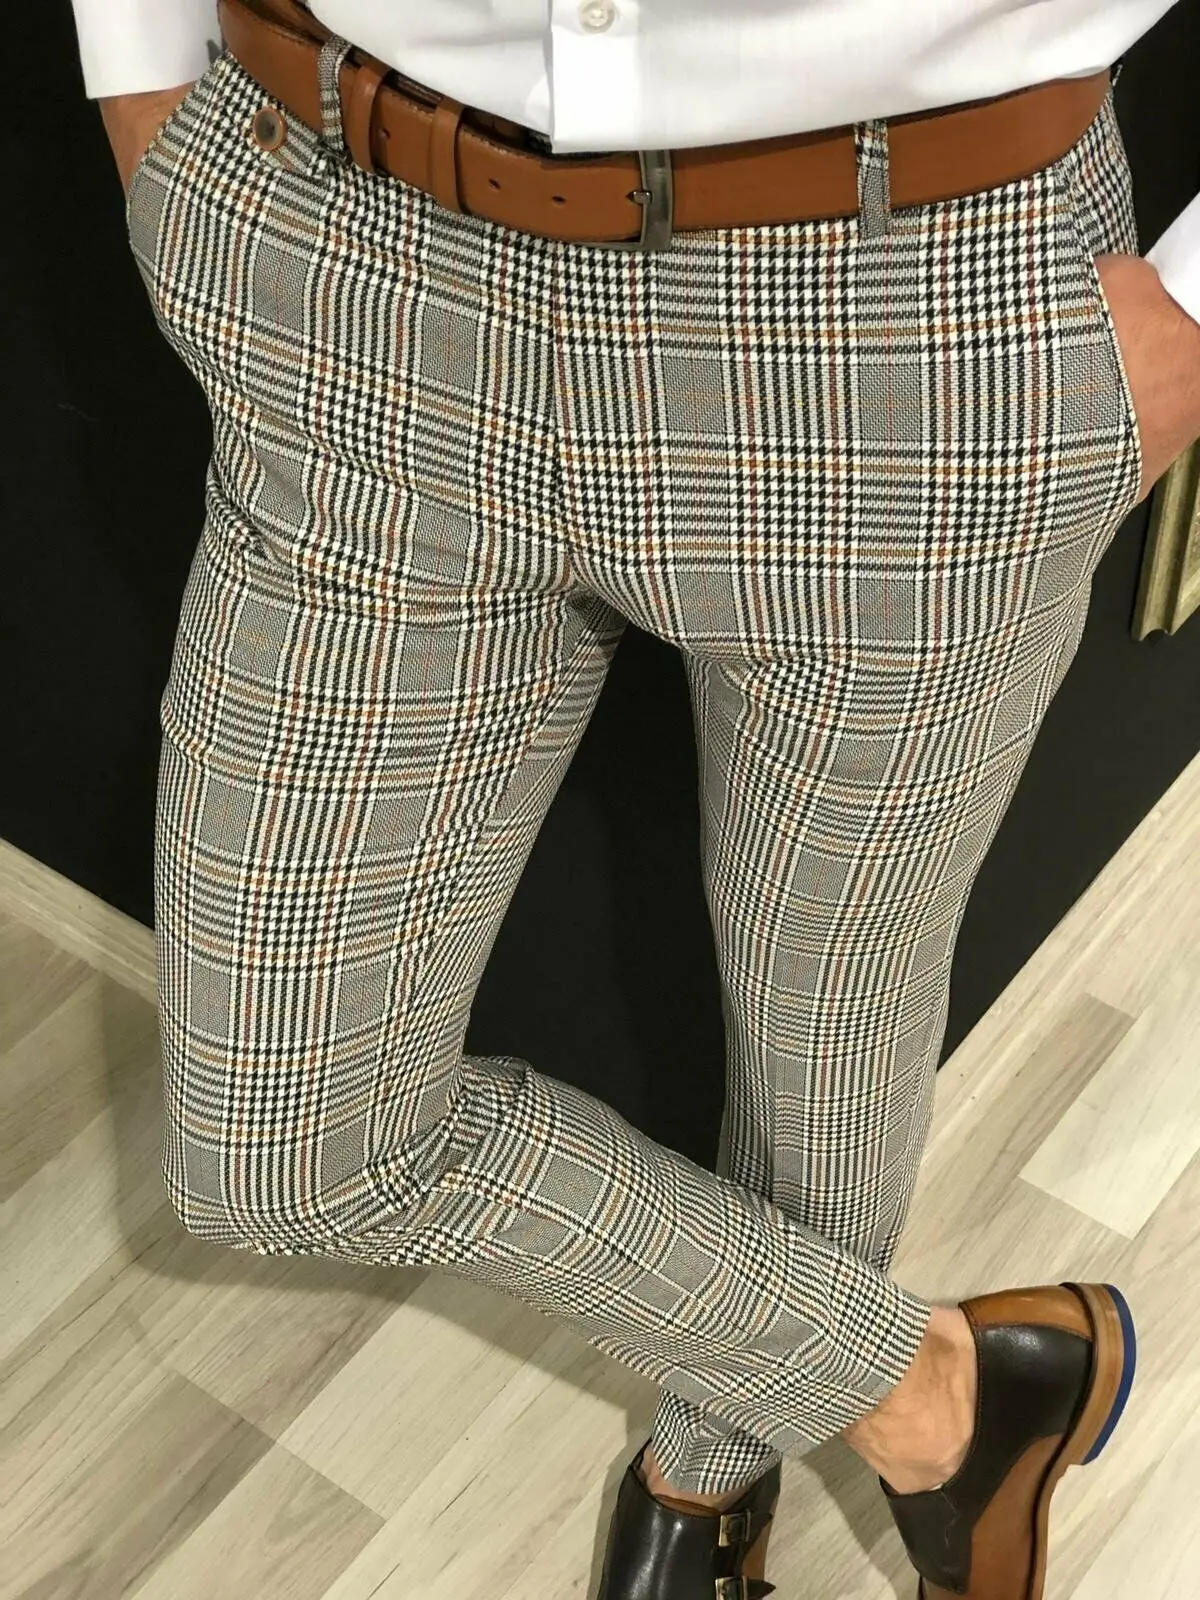 Fashion Men Formal Plaid Pants England Style Gentlemen Slim Fit Casual Long Pants Male Business Office Trousers Plus Size M-3XL